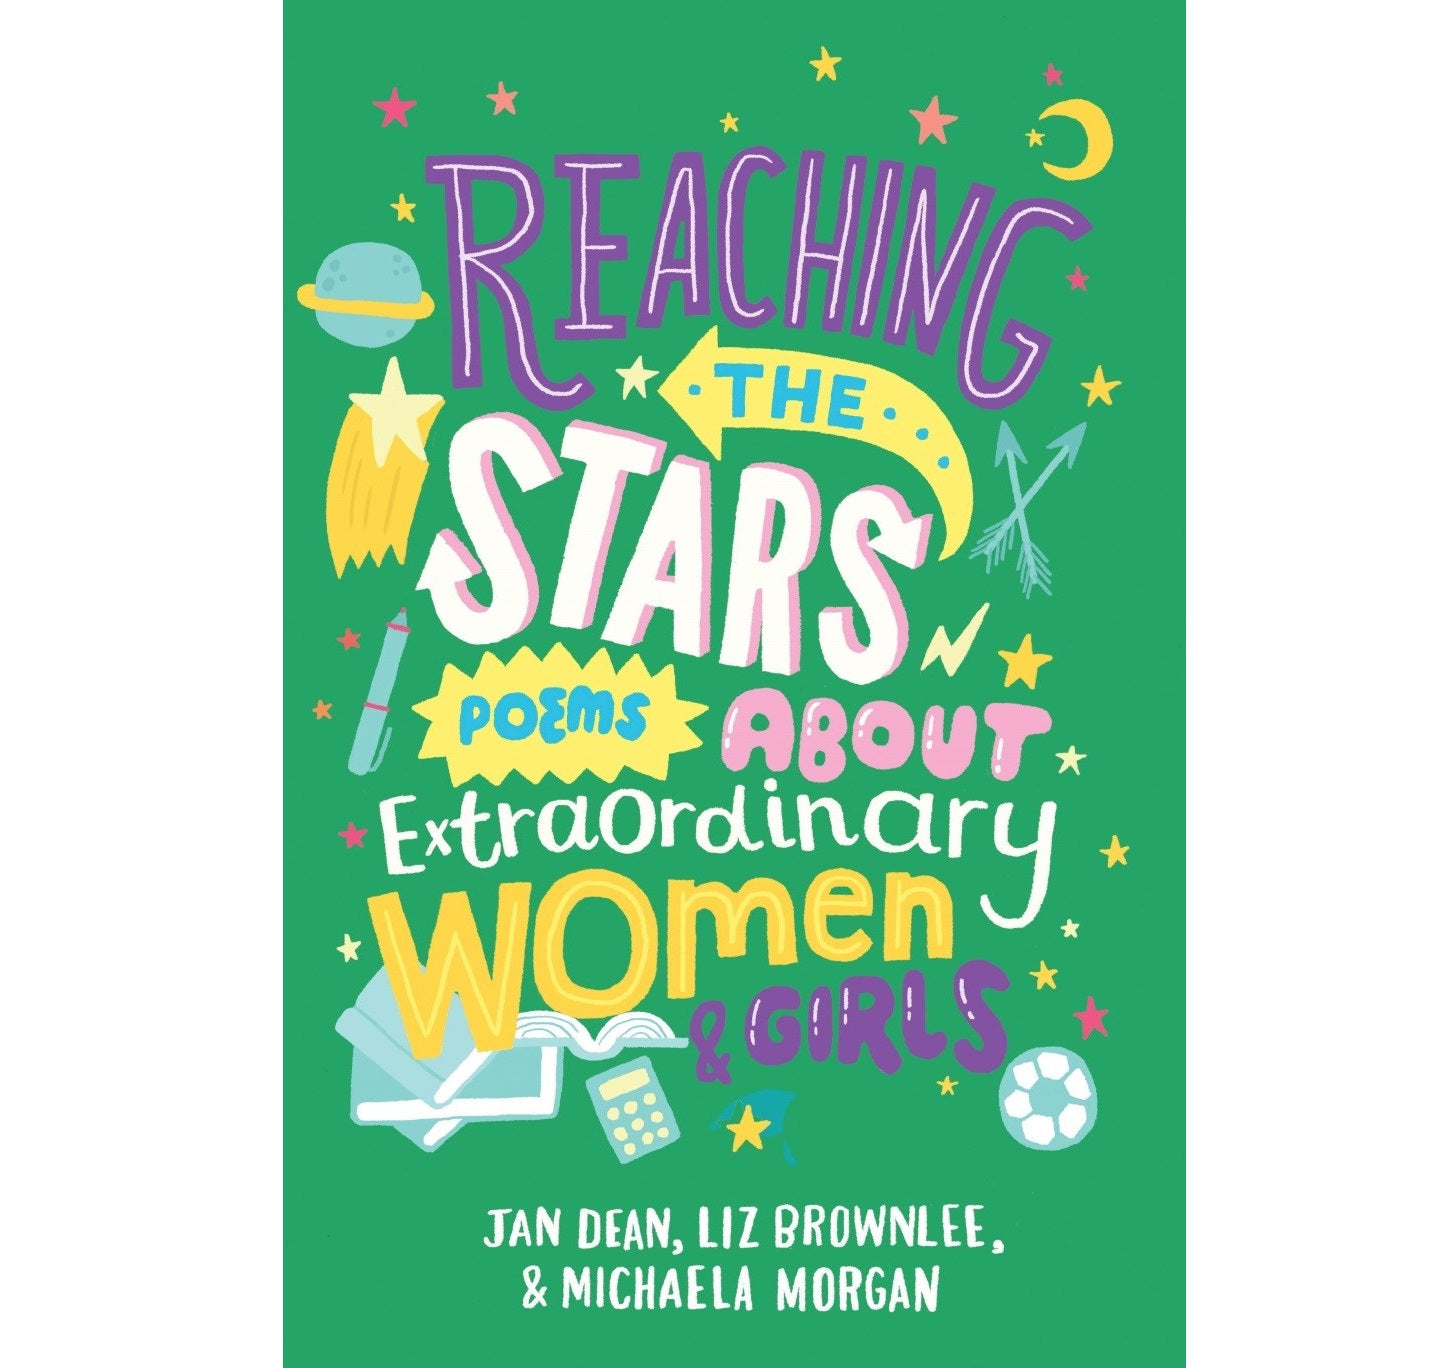 Reaching the Stars: Poems Extraordinary Women &  Girls PB